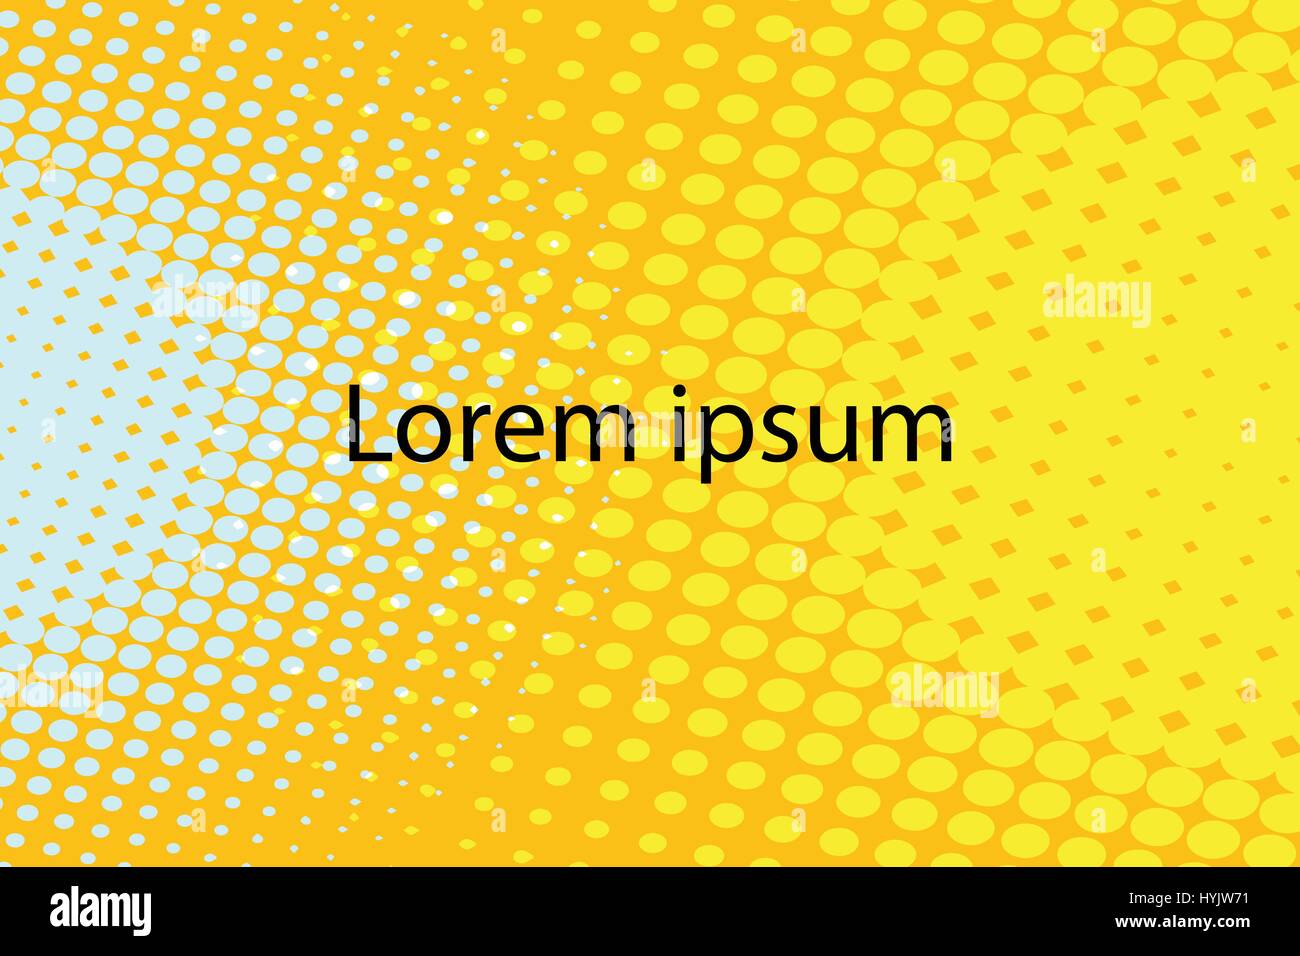 Lorem Ipsum gelb abstrakt Pop Art Retro-Hintergrund Stock Vektor